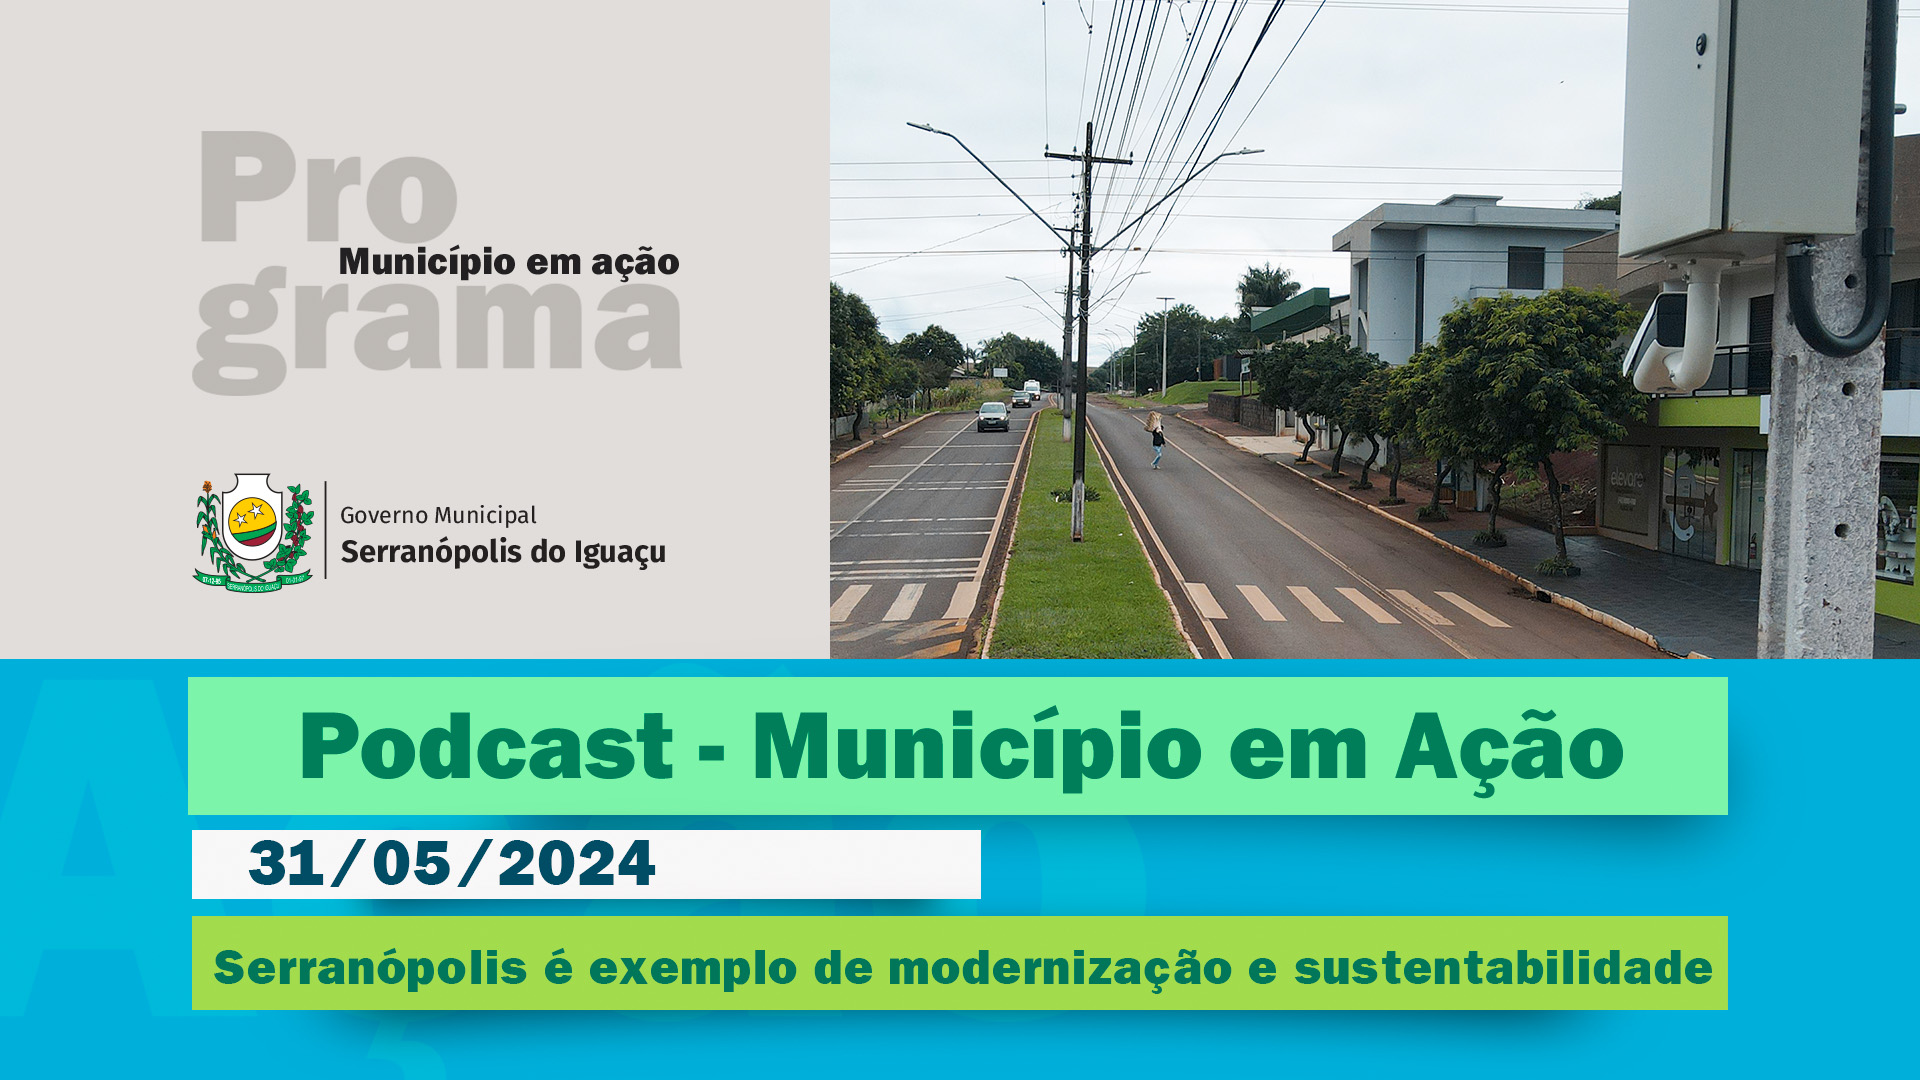 #Podcast - Serranópolis do Iguaçu se destaca em modernização e sustentabilidade - (31/05/2024)